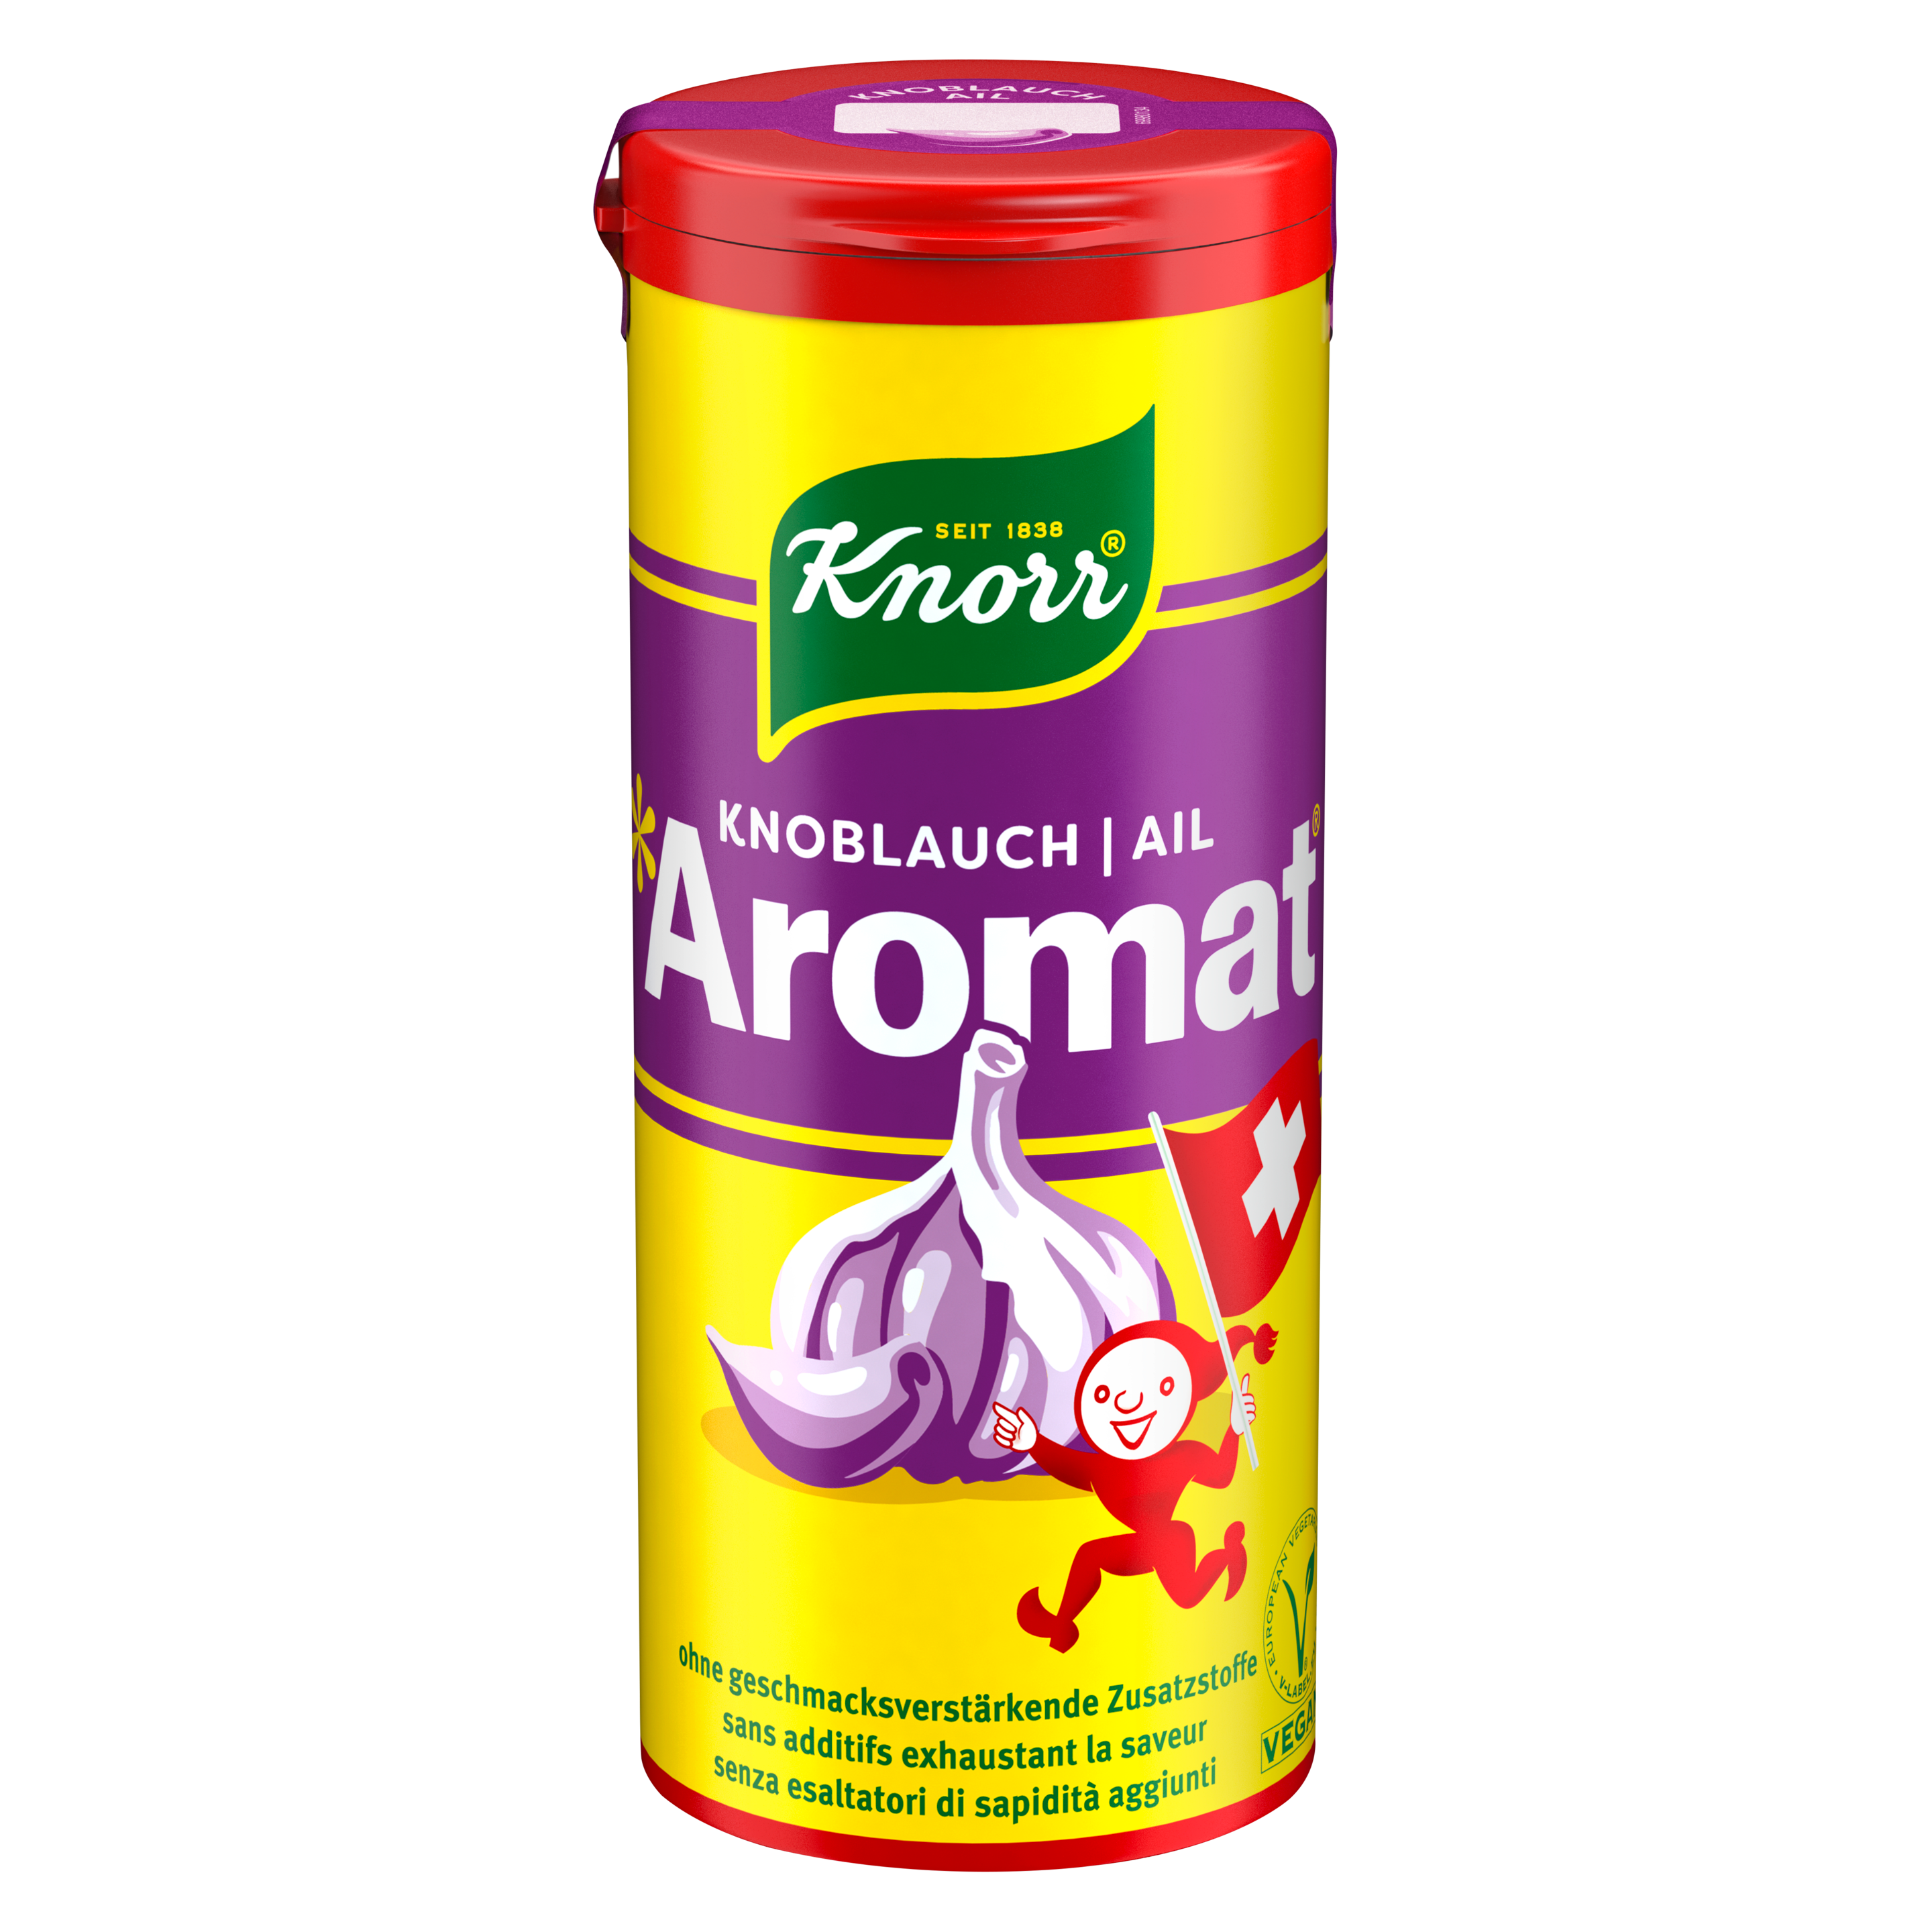 Knorr Aromat Condiment en Poudre